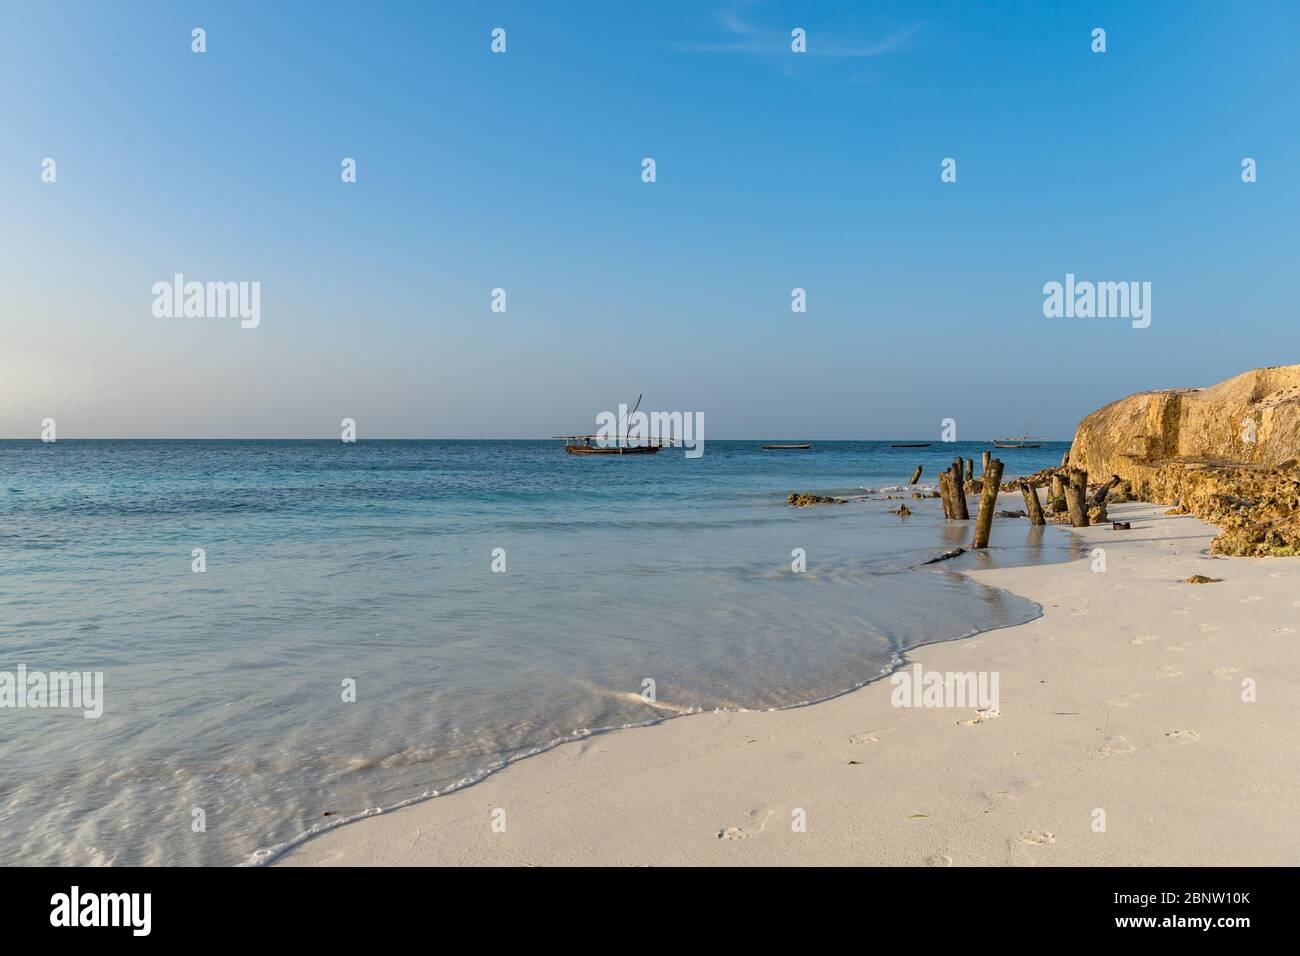 Sansibar, Tansania - 8. Februar. 2020: Sonnenuntergang am Strand von Nungwi mit Menschen, die herumlaufen, Platz für Text kopieren Stockfoto